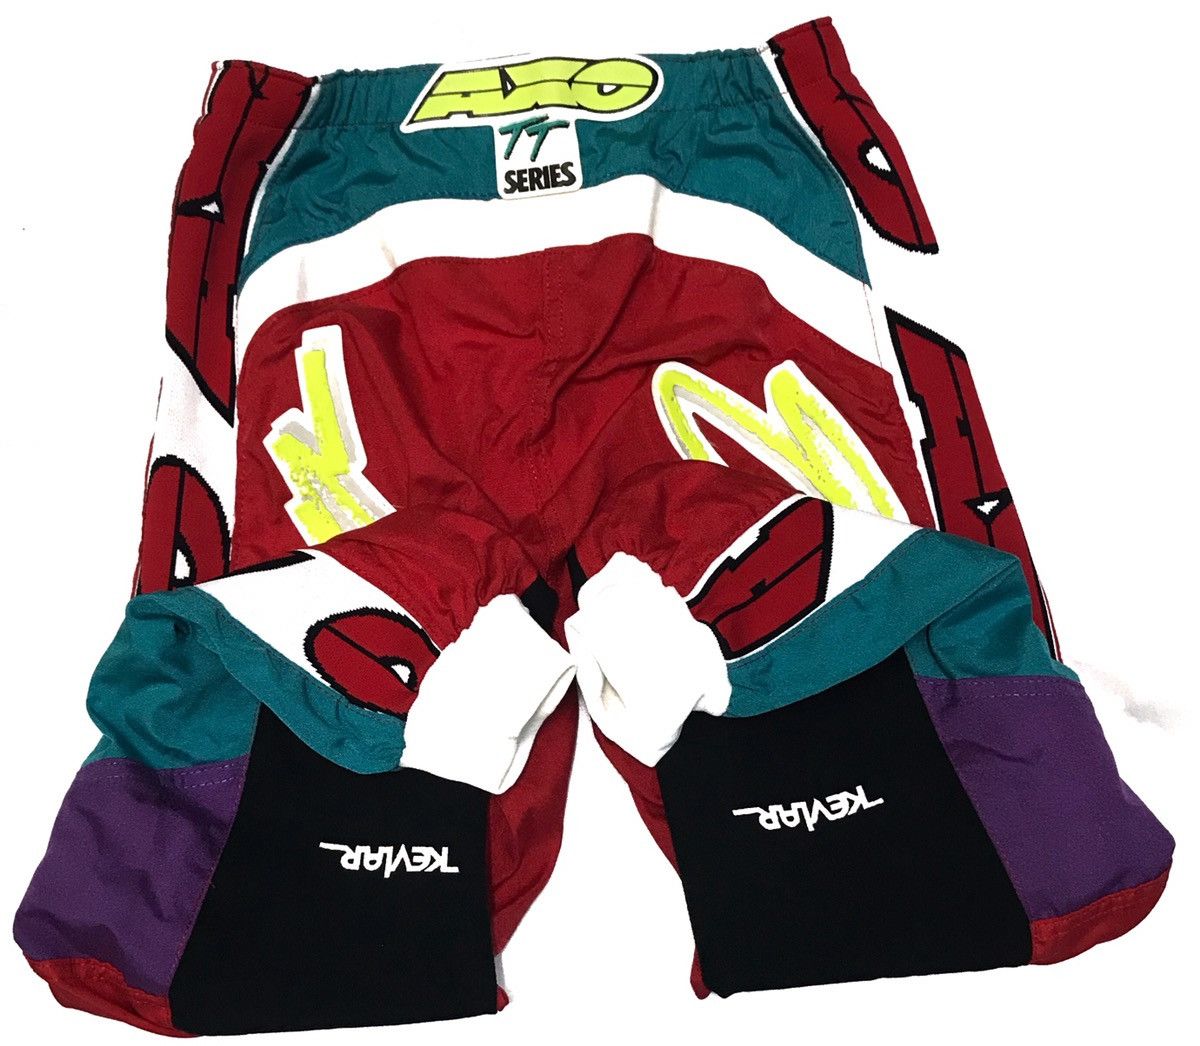 Sports Specialties Axo Motorcycle Biker/BMX Pant Size US 30 / EU 46 - 8 Thumbnail